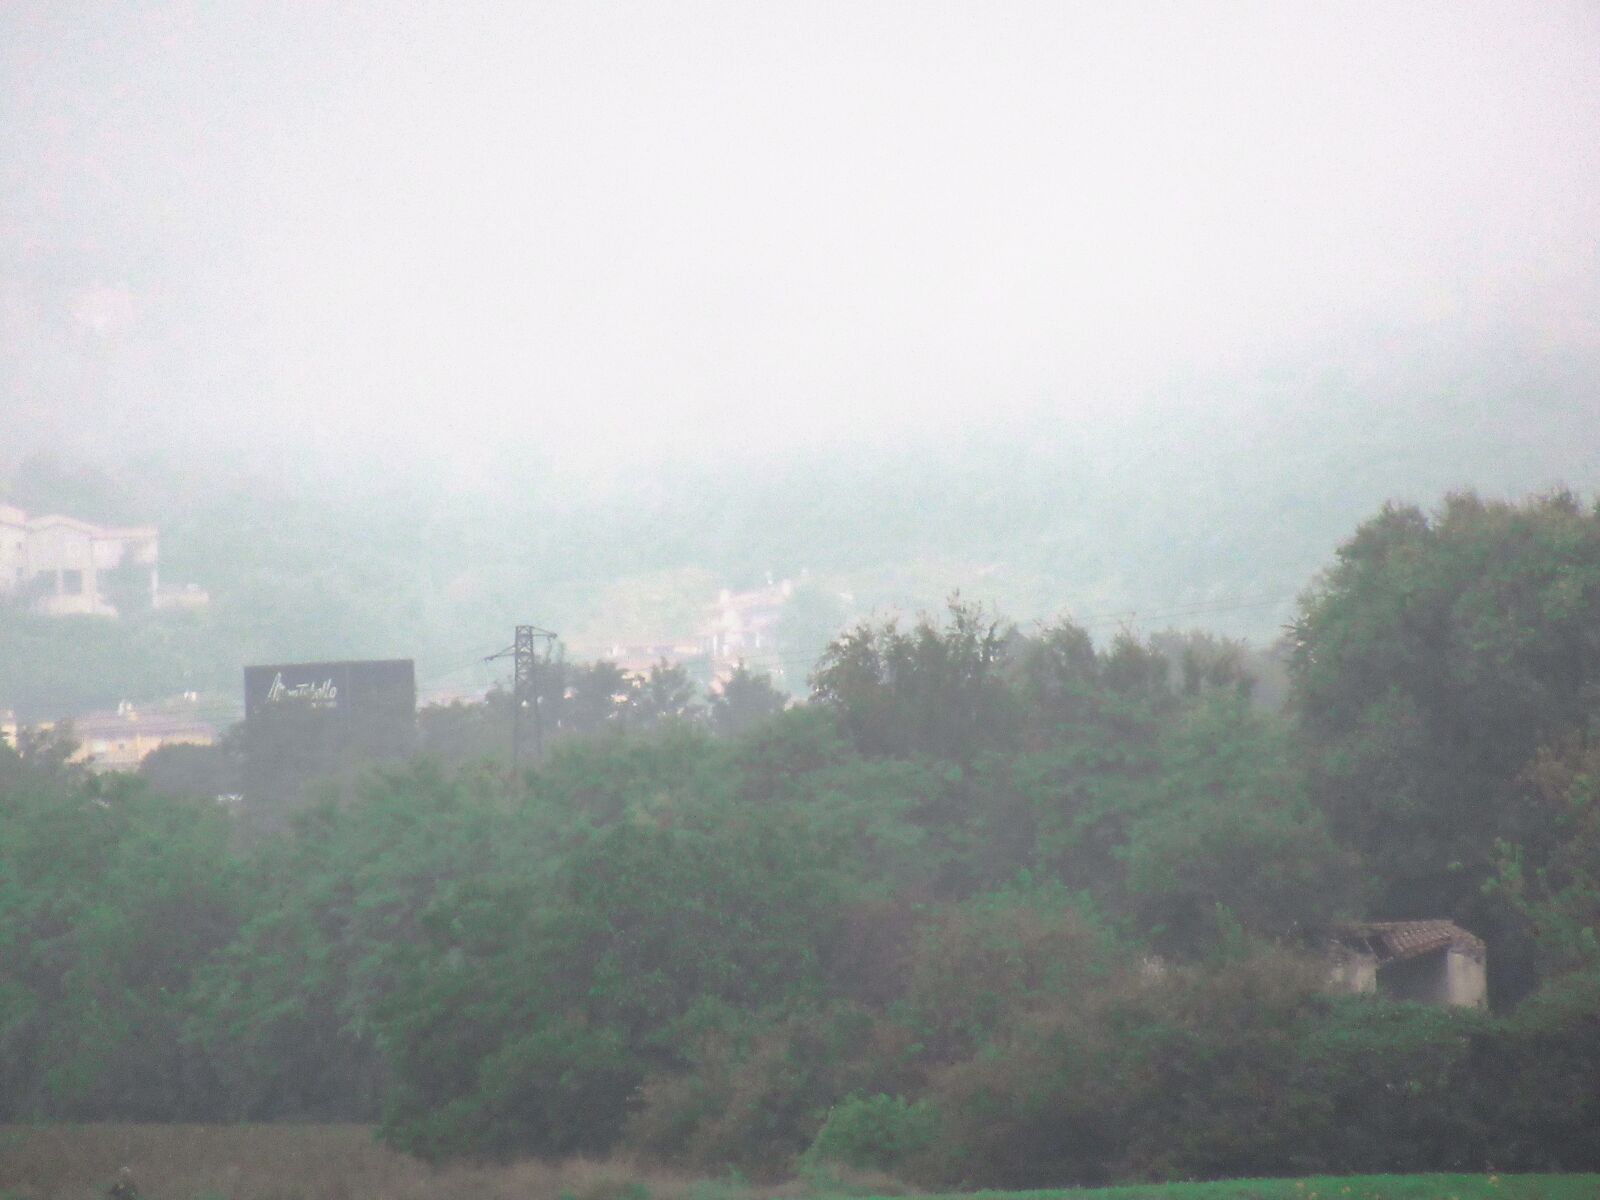 Canon PowerShot SX620 HS sample photo. Castle, fog, landscape photography